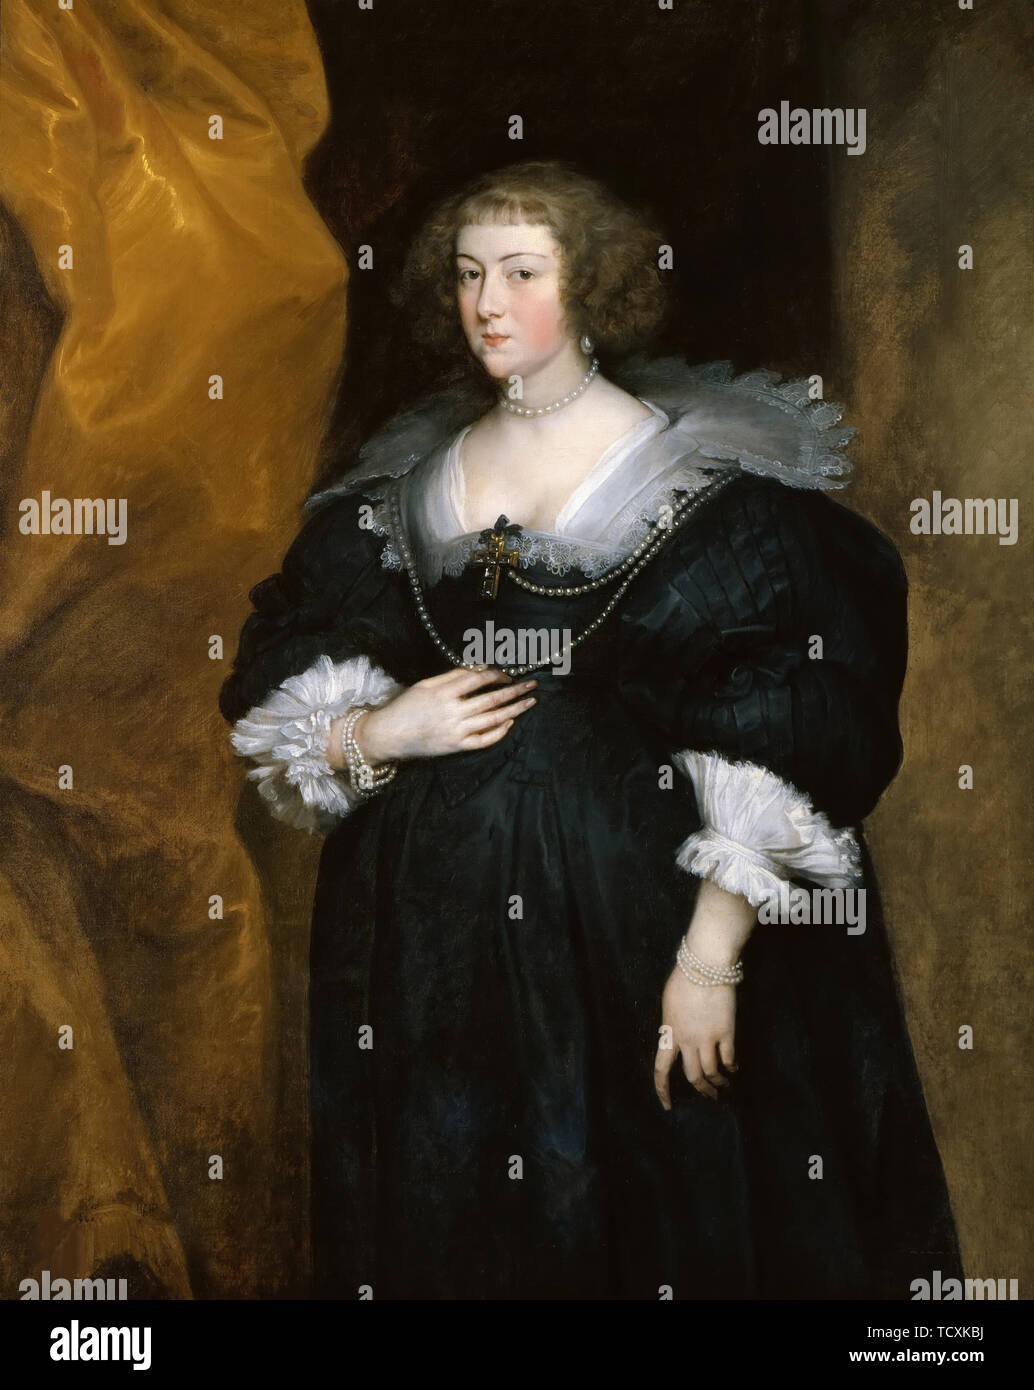 Retrato de una dama, c. 1635. Creador: Dyck, Sir Anthony van (1599-1641). Foto de stock